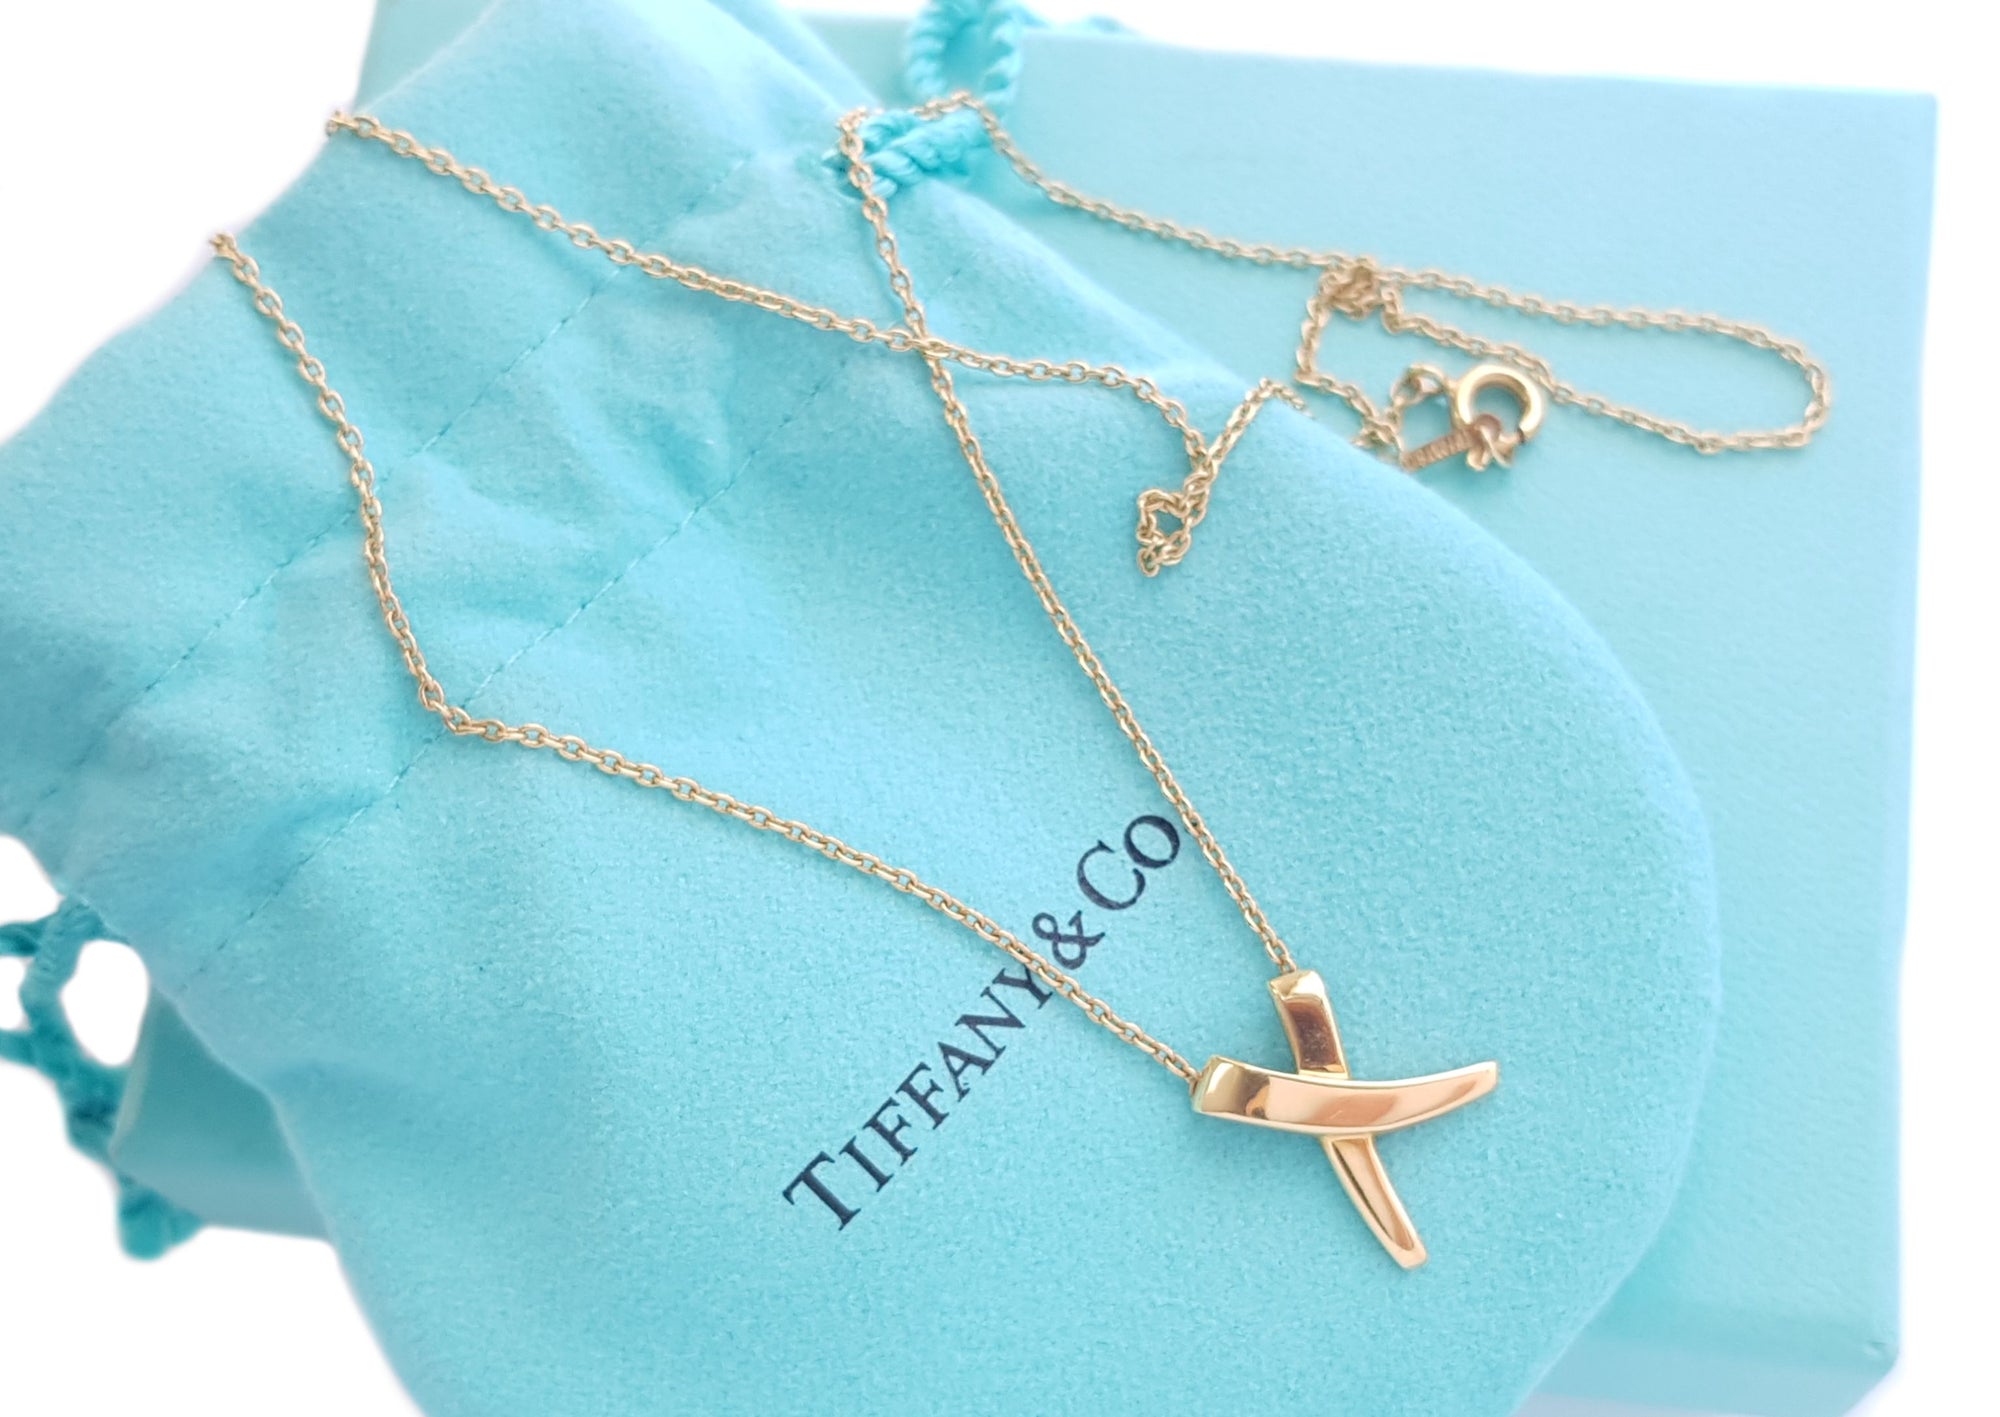 Tiffany & Co. 18K Paloma's Graffiti X Pendant Necklace - 18K Yellow Gold Pendant  Necklace, Necklaces - TIF260103 | The RealReal